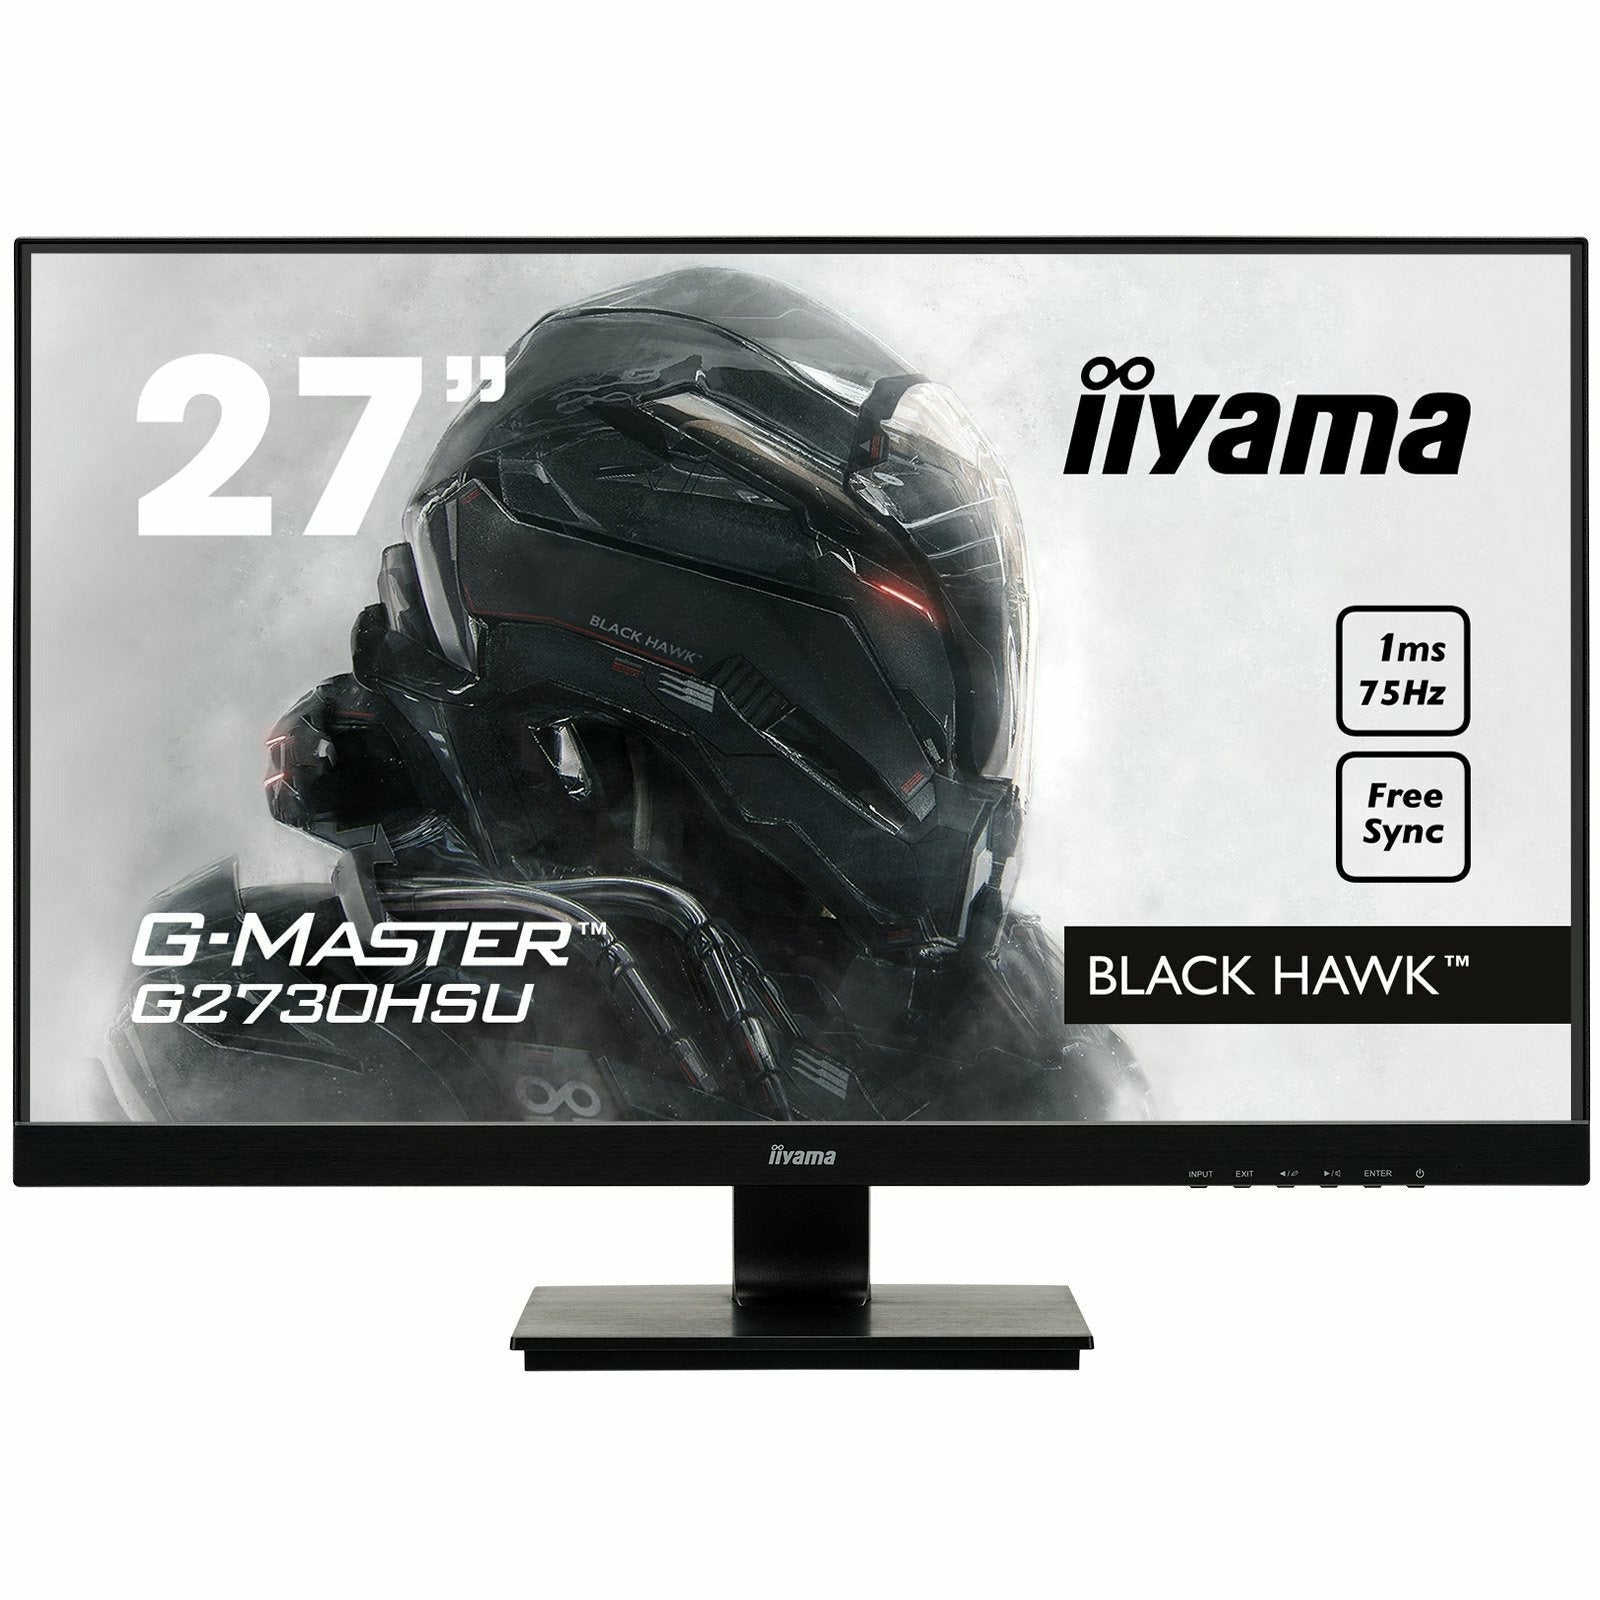 iiyama G-Master G2730HSU-B1 27" Black Hawk Gaming Monitor